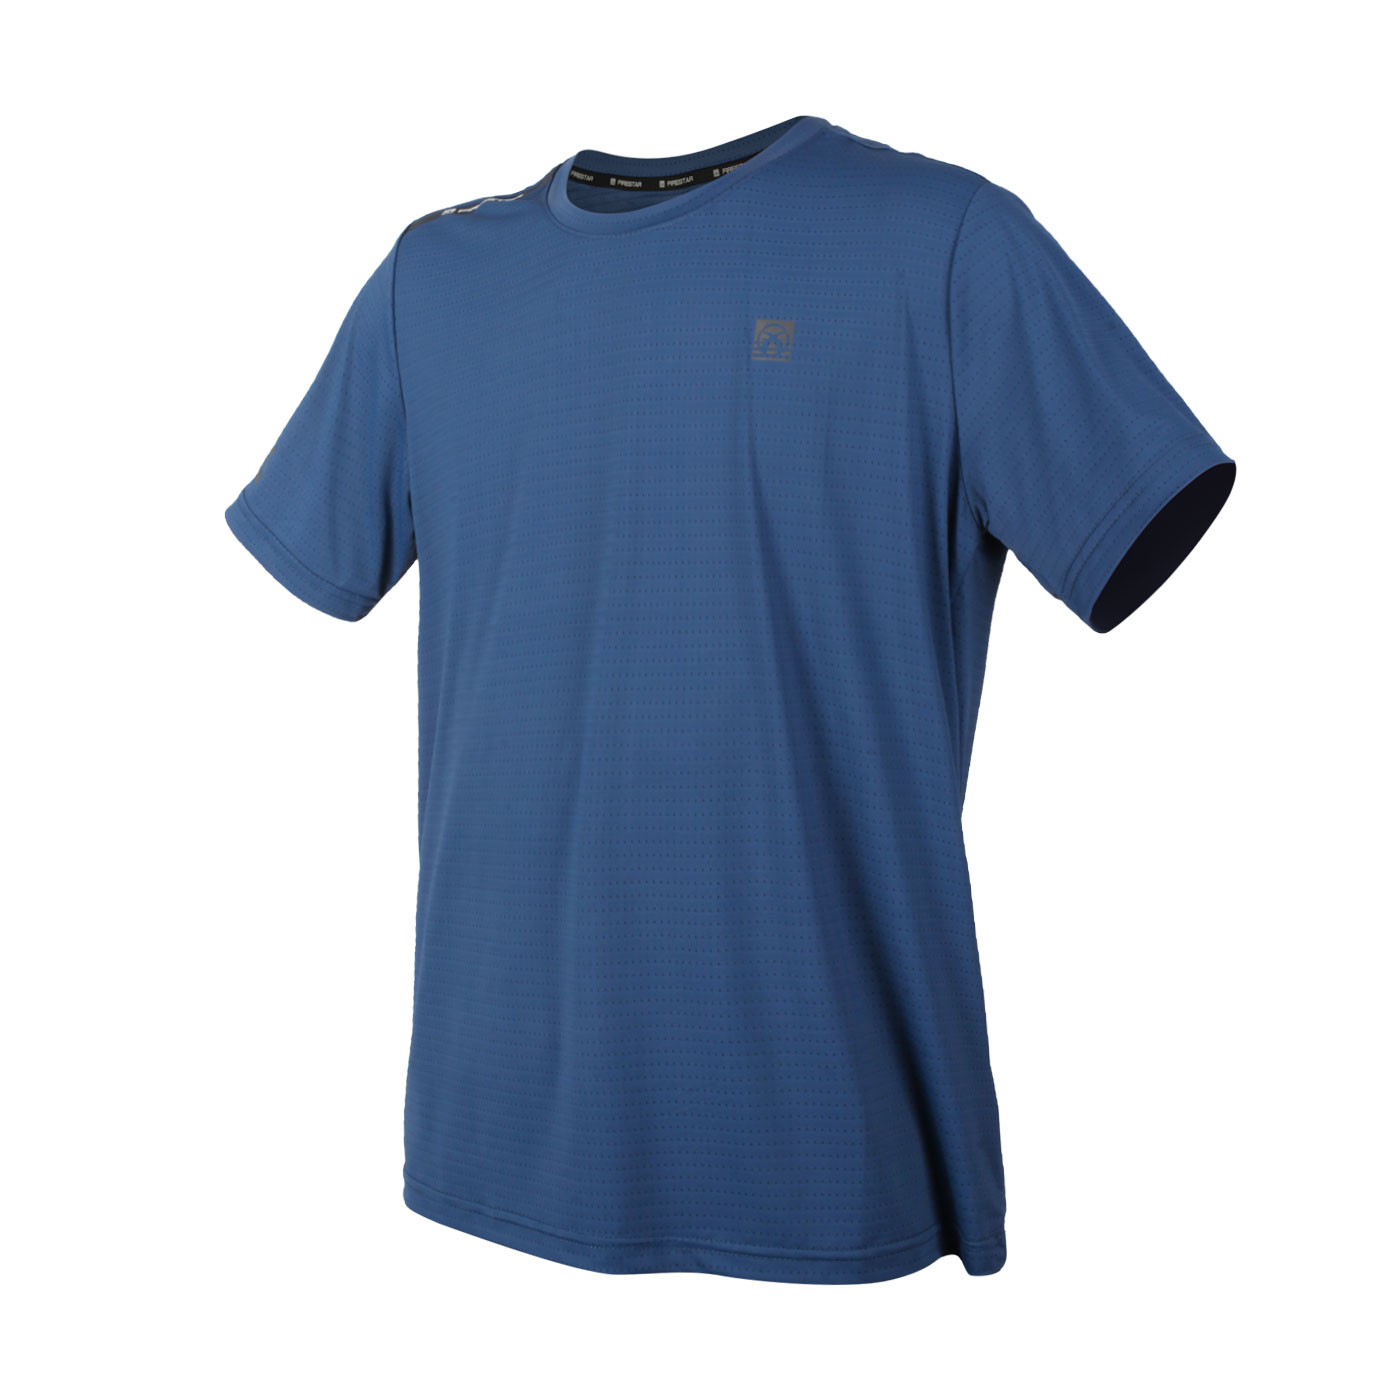 FIRESTAR 男款彈性圓領短袖T恤 D2033-98 - 靛藍灰